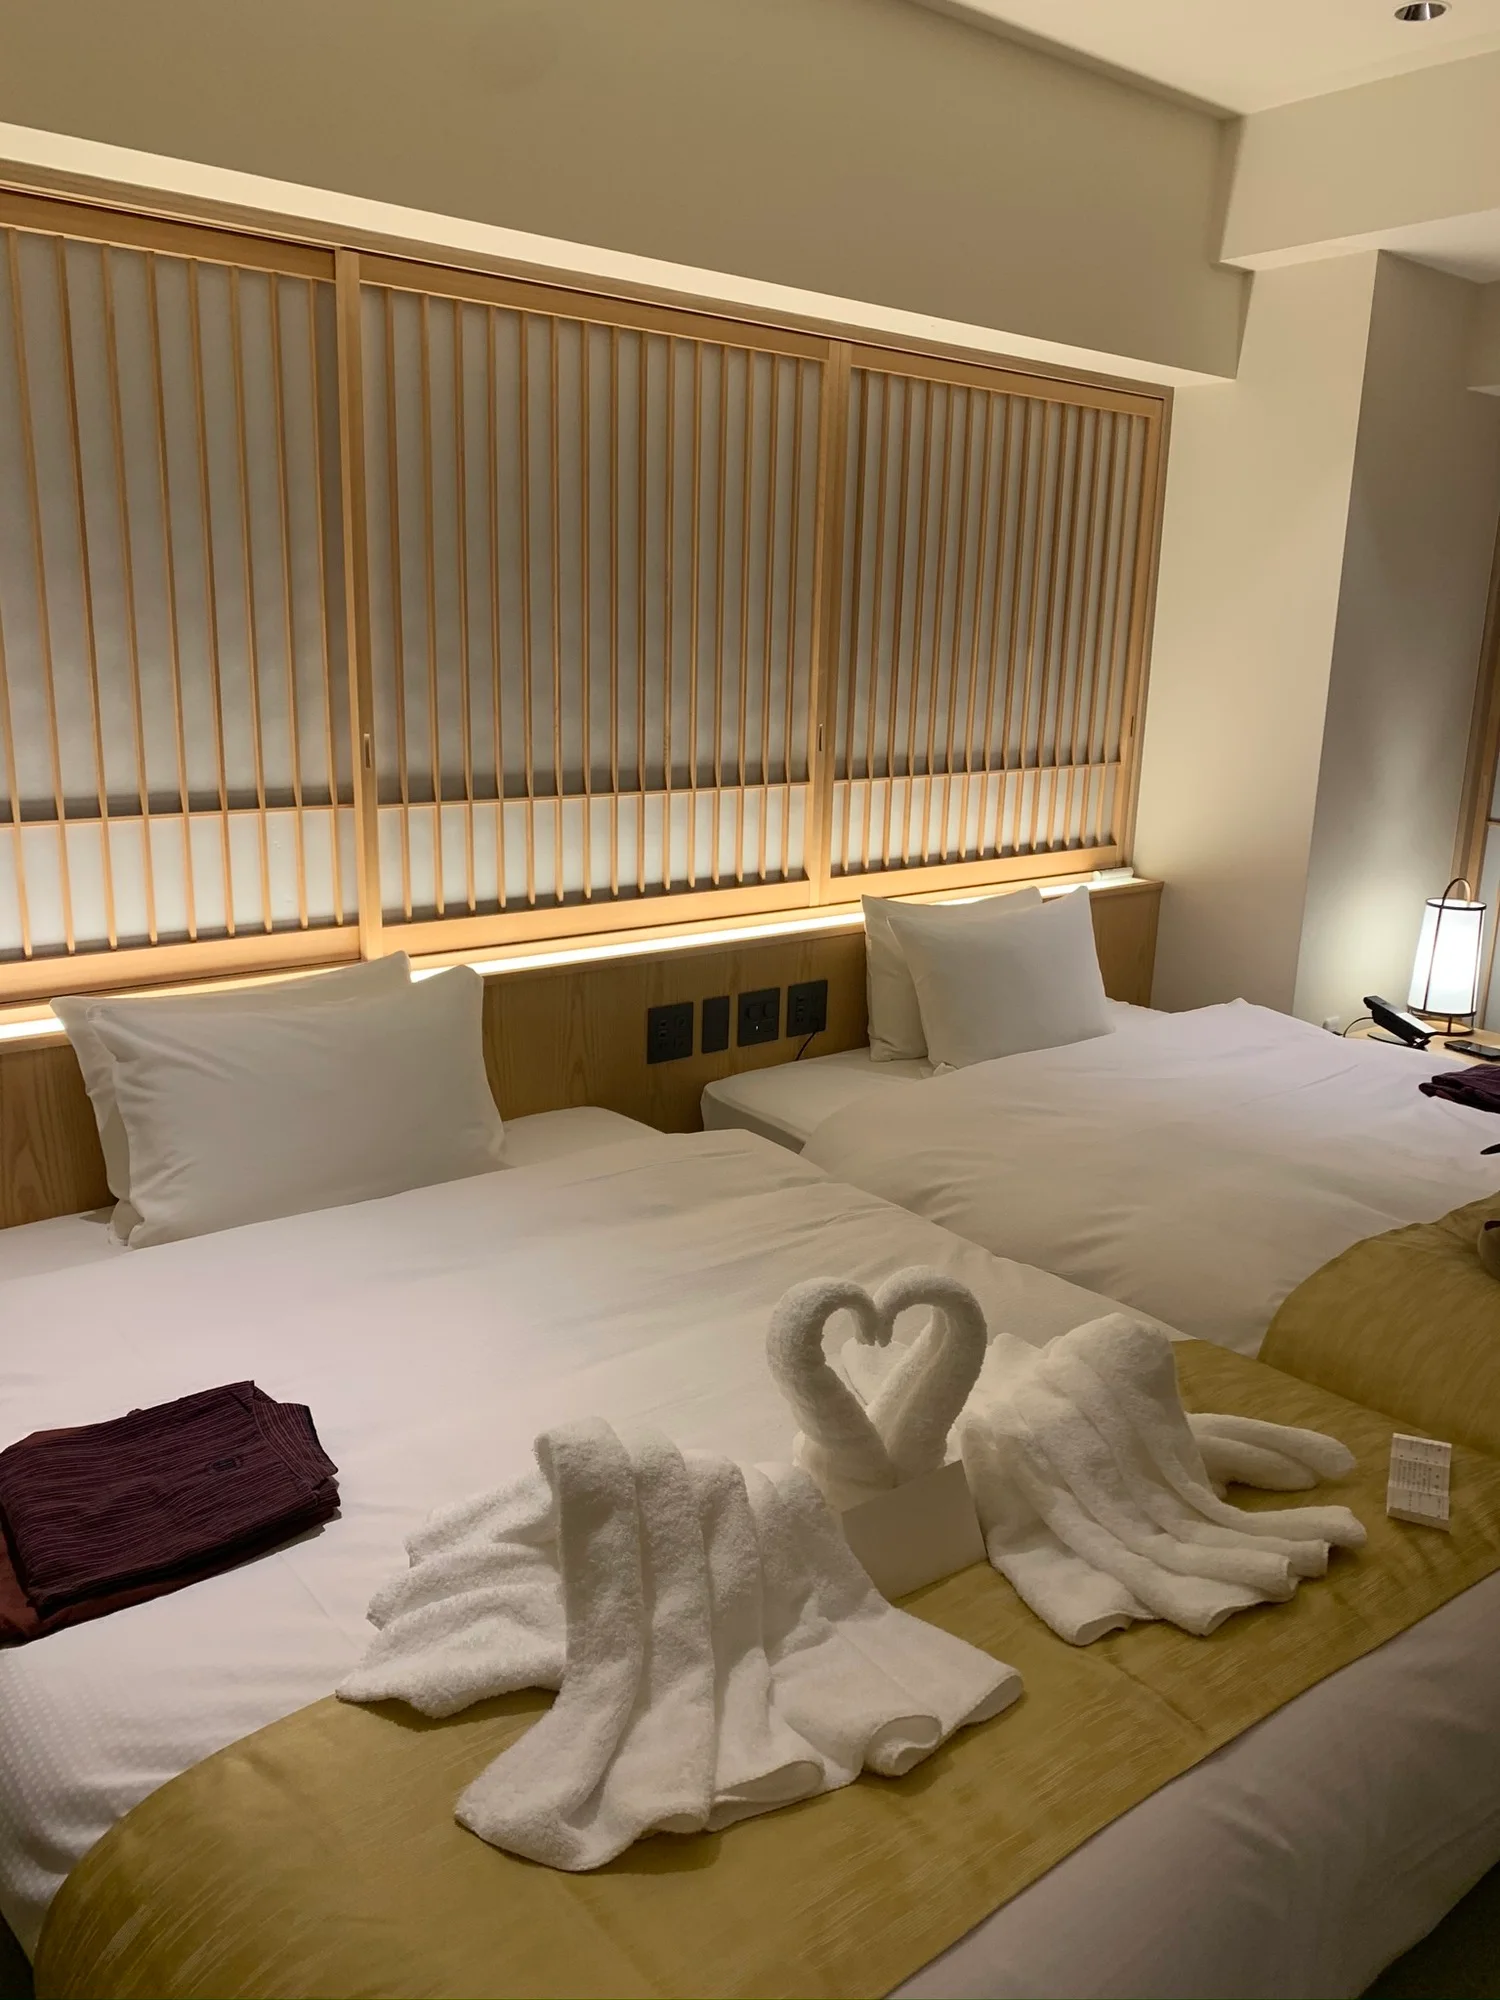 東京で温泉旅気分 カップルにおすすめ 露天風呂付き客室 のあるホテル15選 Icotto イコット